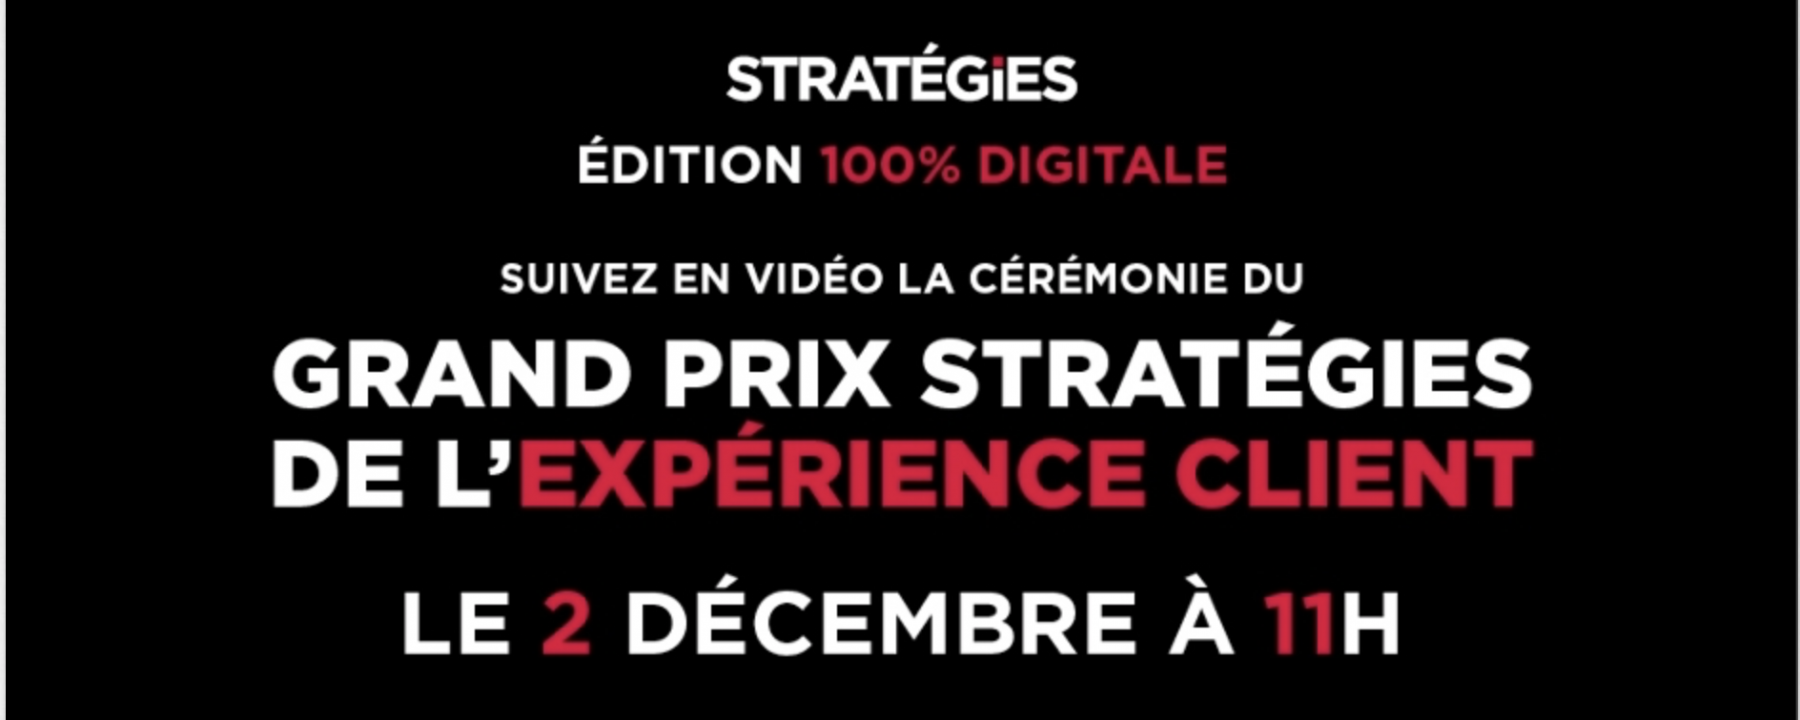 Grand Prix Stratégies de l' Expérience Client 2020, le 7 octobre 2020, organisé par Stratégies 